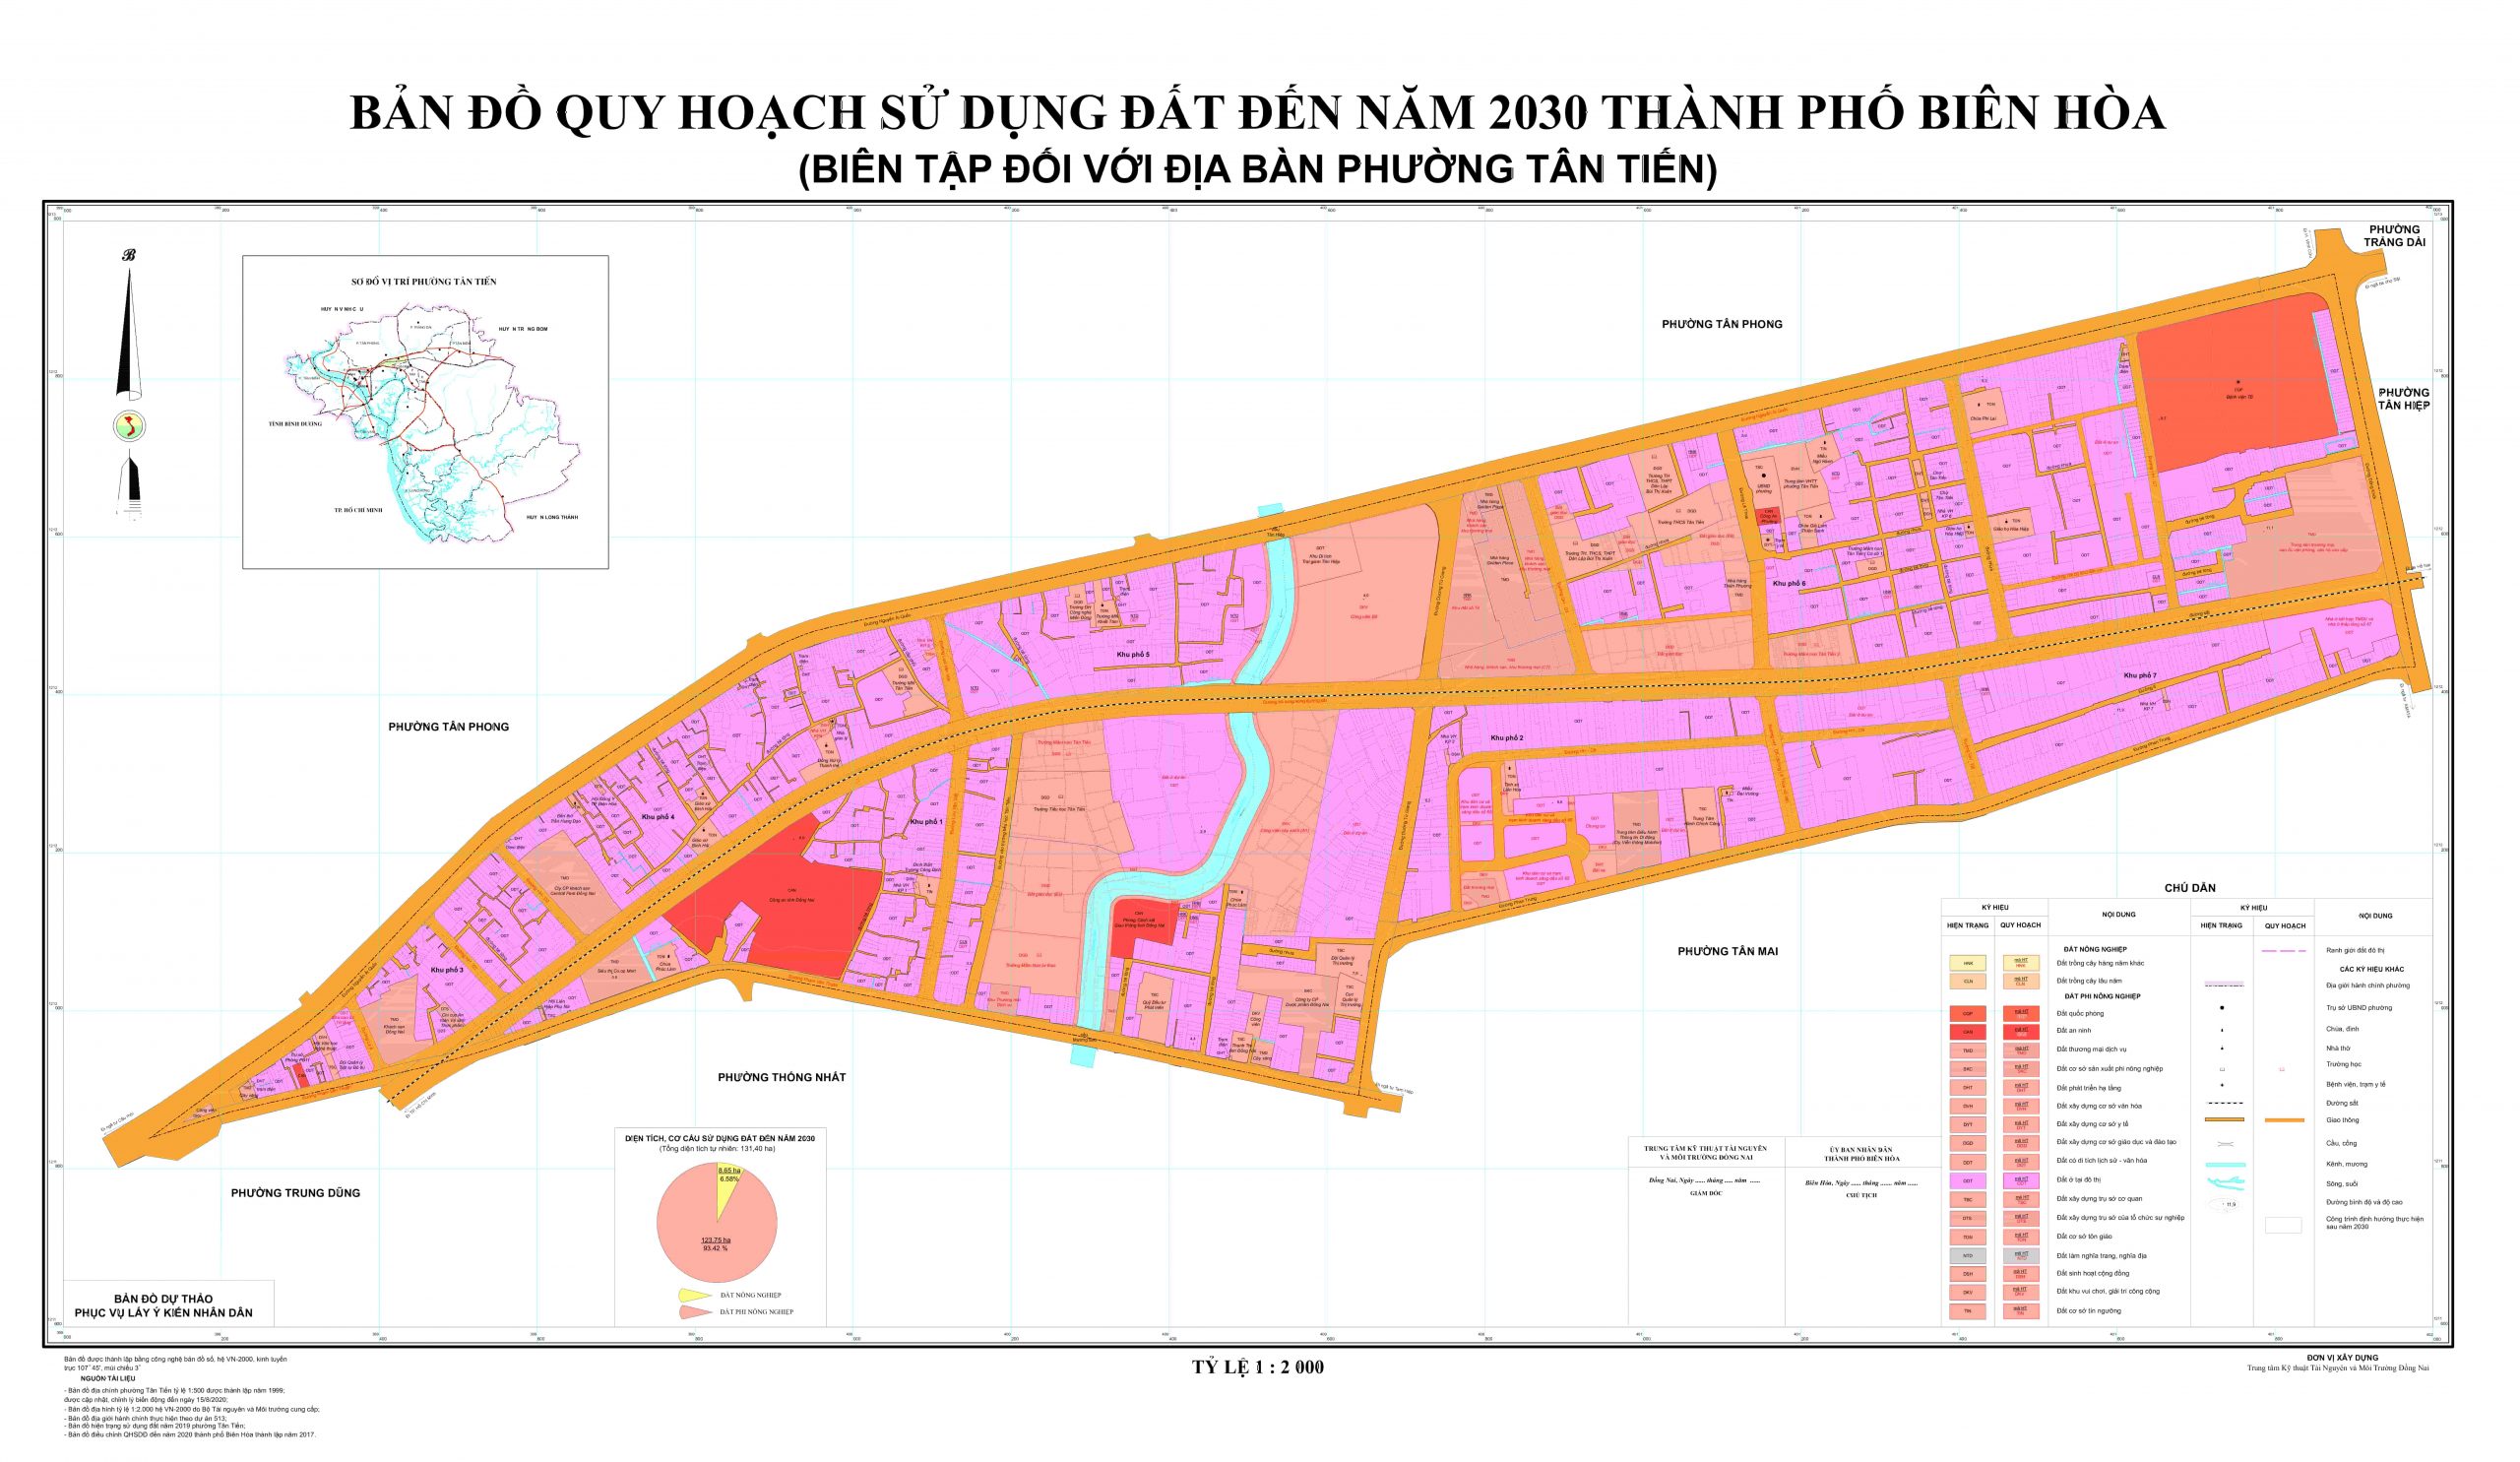 Nếu bạn muốn biết về kế hoạch quy hoạch phường Tân Tiến, chúng tôi cung cấp cho bạn hình ảnh liên quan đến từ khóa này để giúp bạn hiểu rõ hơn về khu vực này và các kế hoạch trong tương lai.